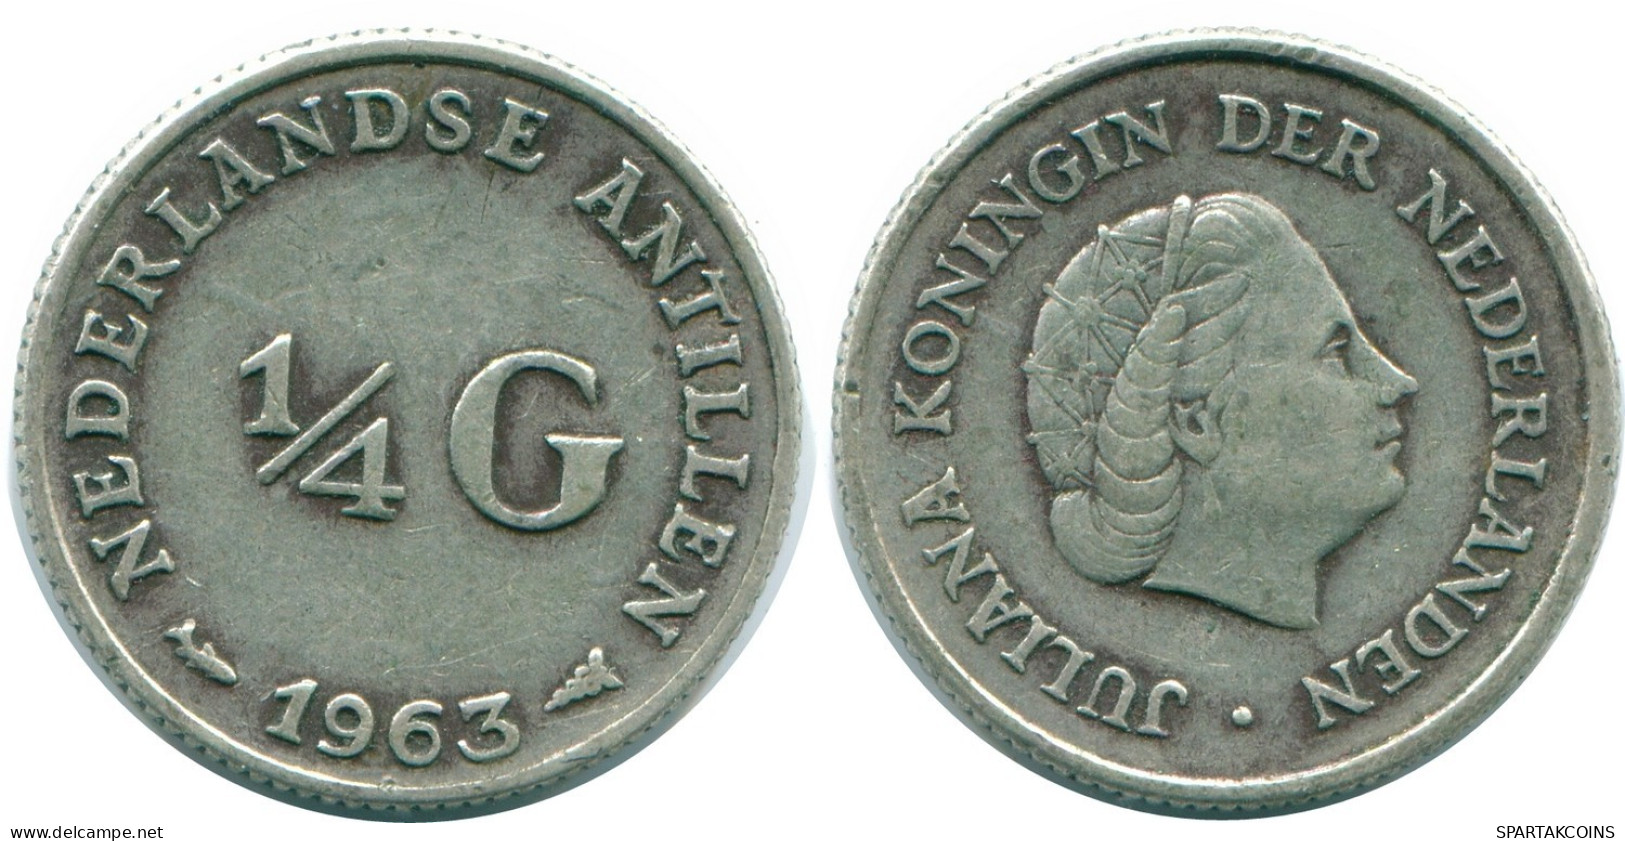 1/4 GULDEN 1963 NIEDERLÄNDISCHE ANTILLEN SILBER Koloniale Münze #NL11261.4.D.A - Antilles Néerlandaises